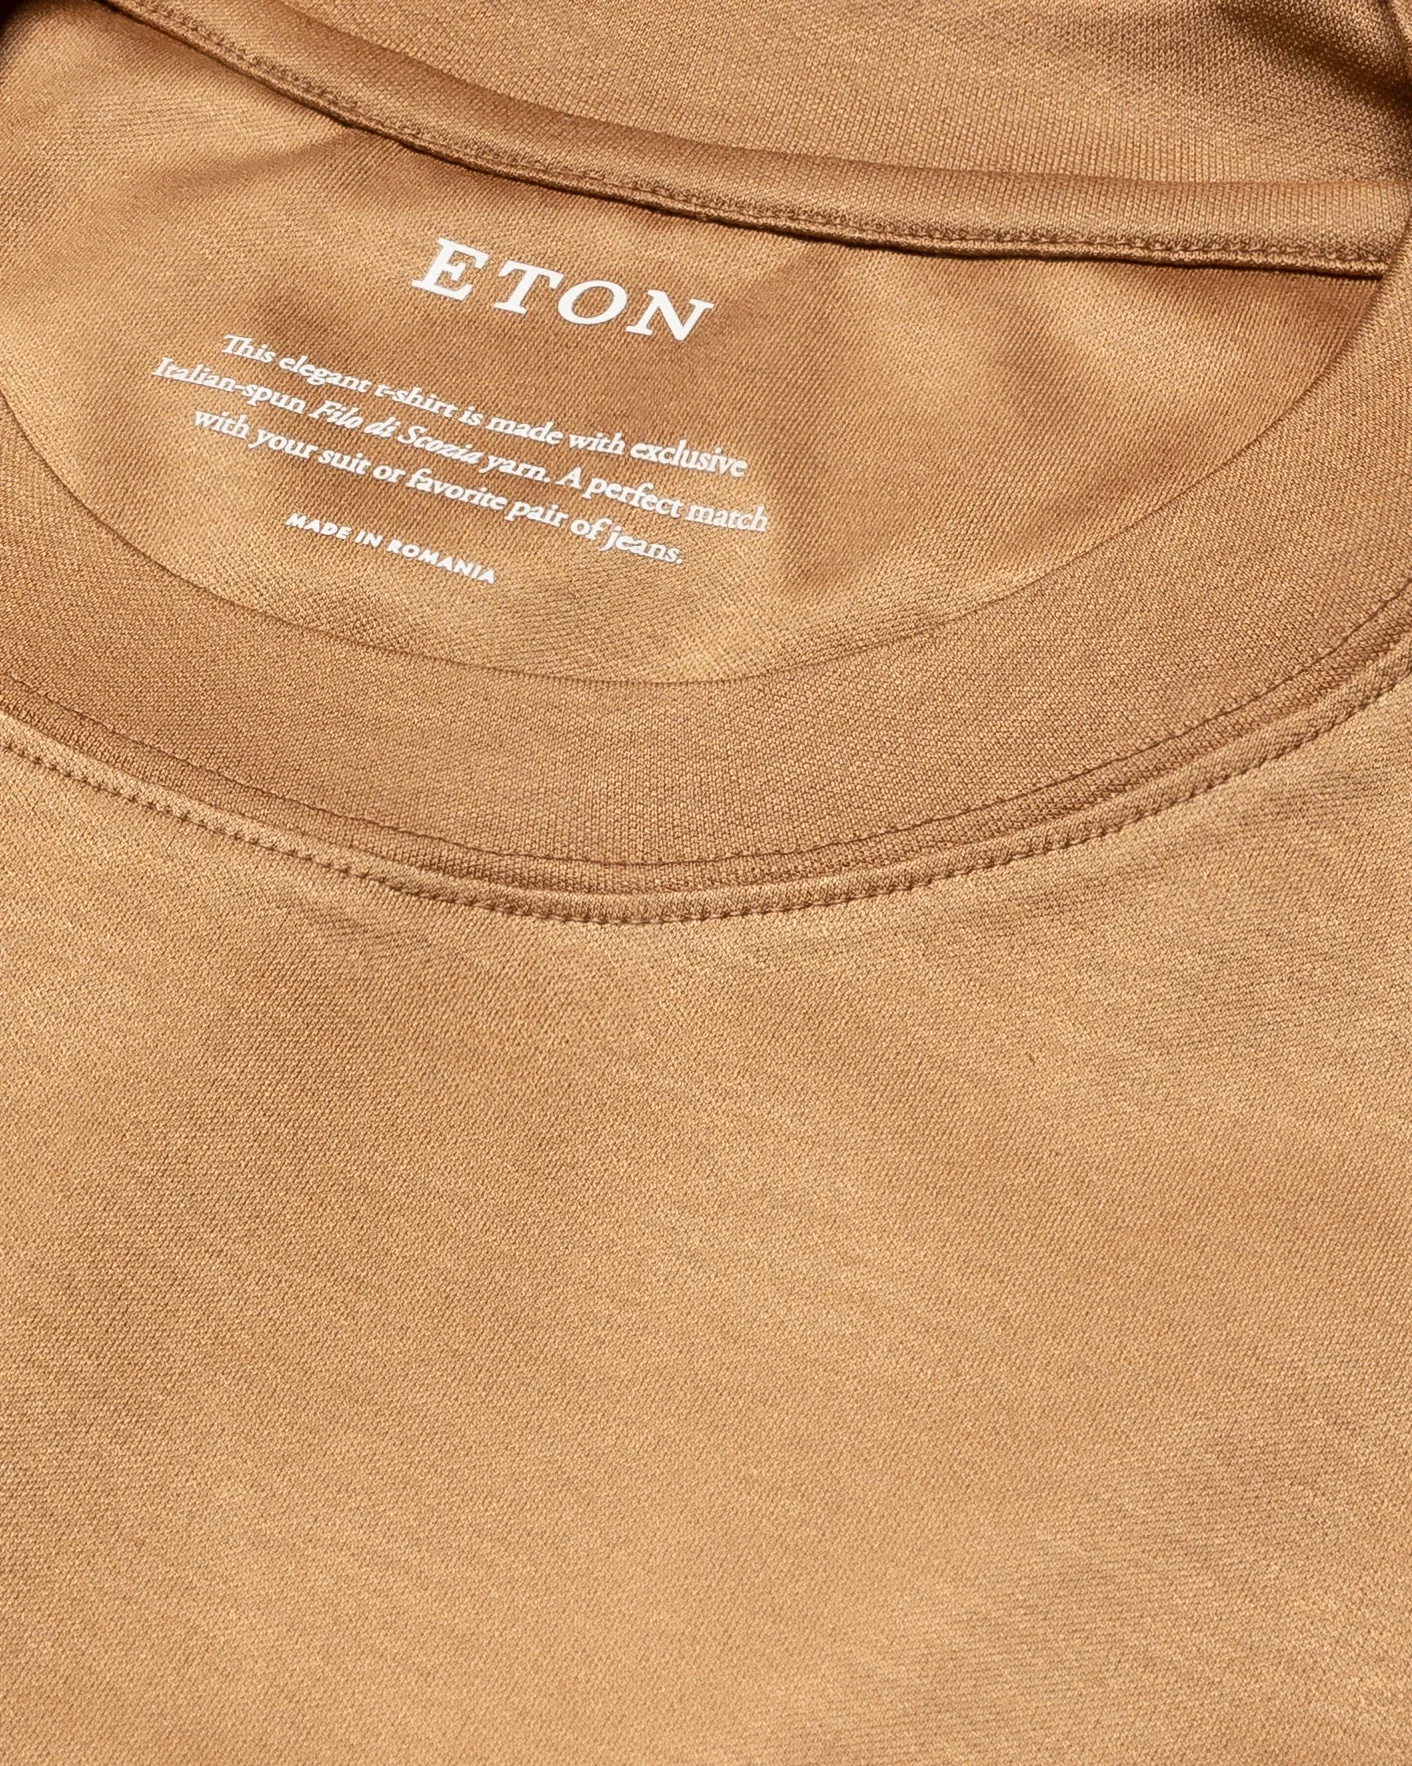 Eton - light brown filo di scozia t shirt t shirt short sleeve boxfit t shirt